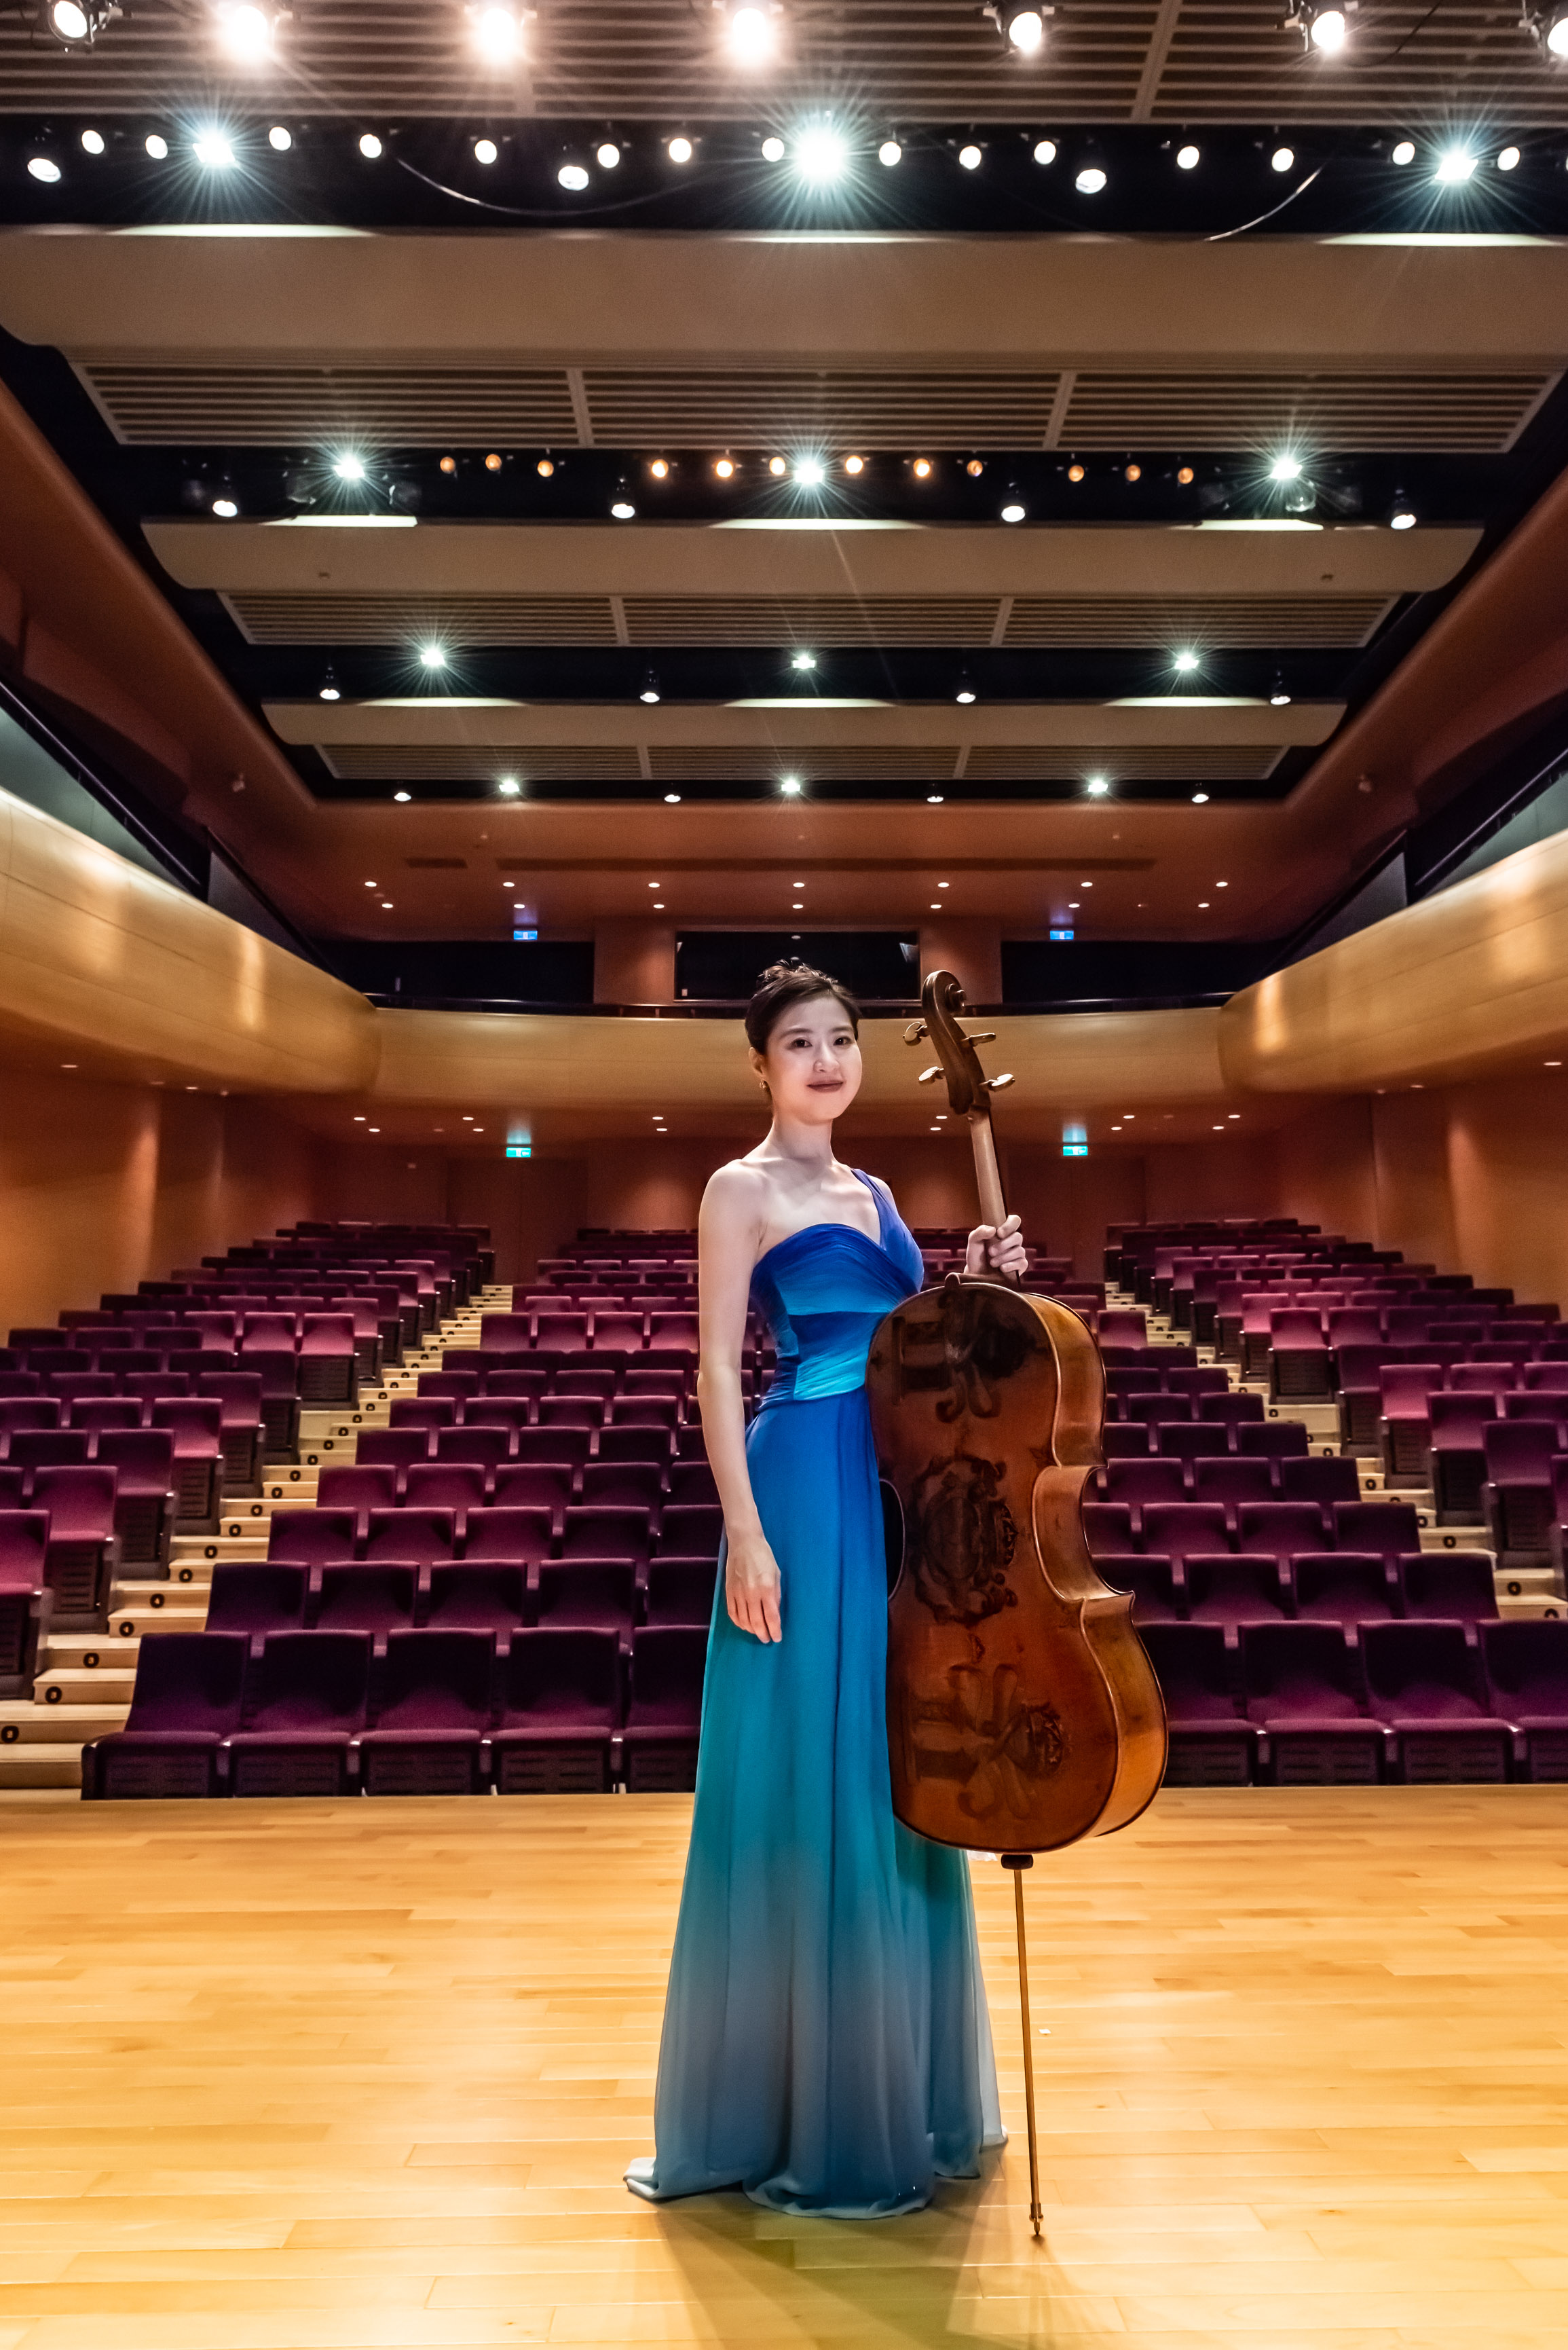 奇美音樂節「靈魂的印痕」邀請國立台灣交響樂團帶來「民族火光──NTSO浪漫狂想」